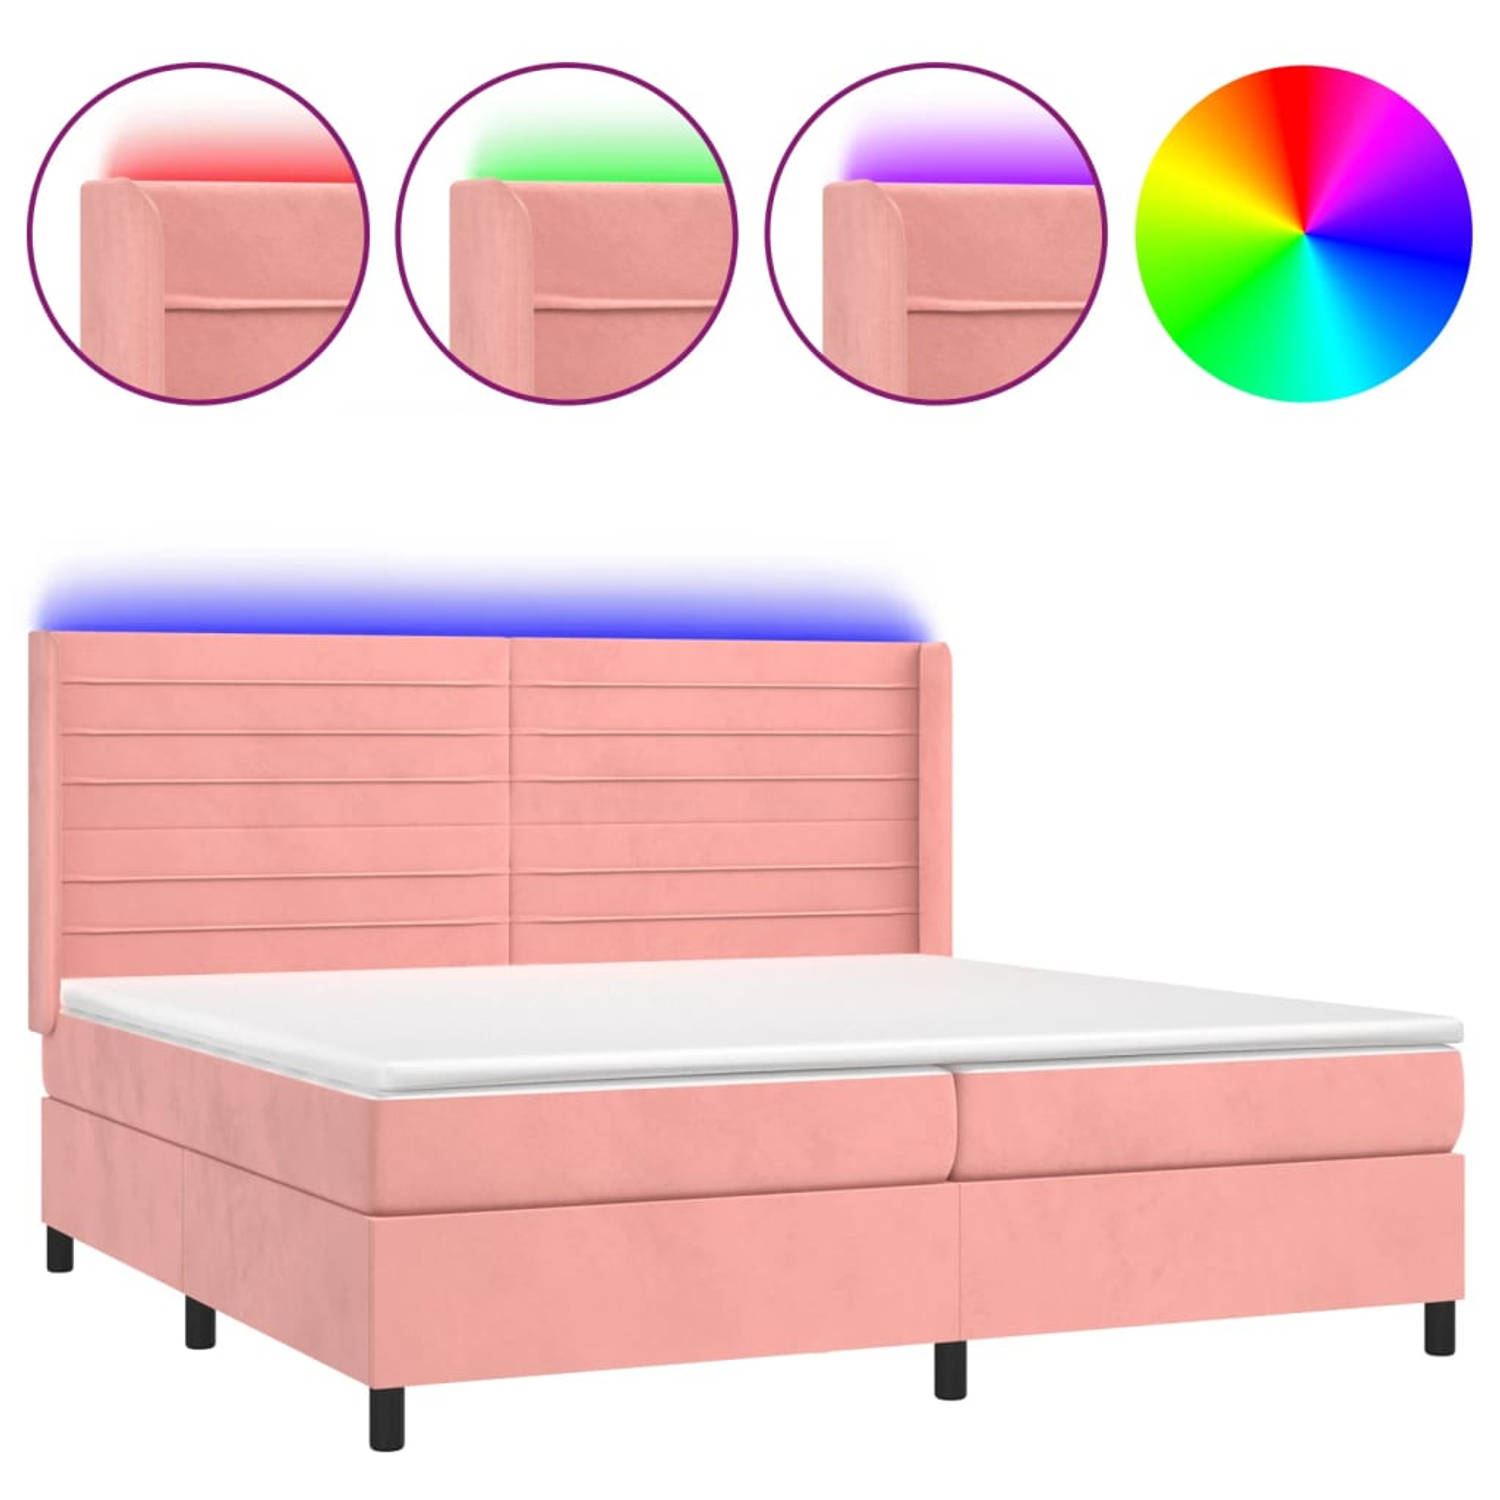 The Living Store Bed - Roze Fluweel - Boxspring 203x203cm - Verstelbaar hoofdbord - LED-verlichting - Pocketvering matras - Huidvriendelijk topmatras - Met montagehandleiding